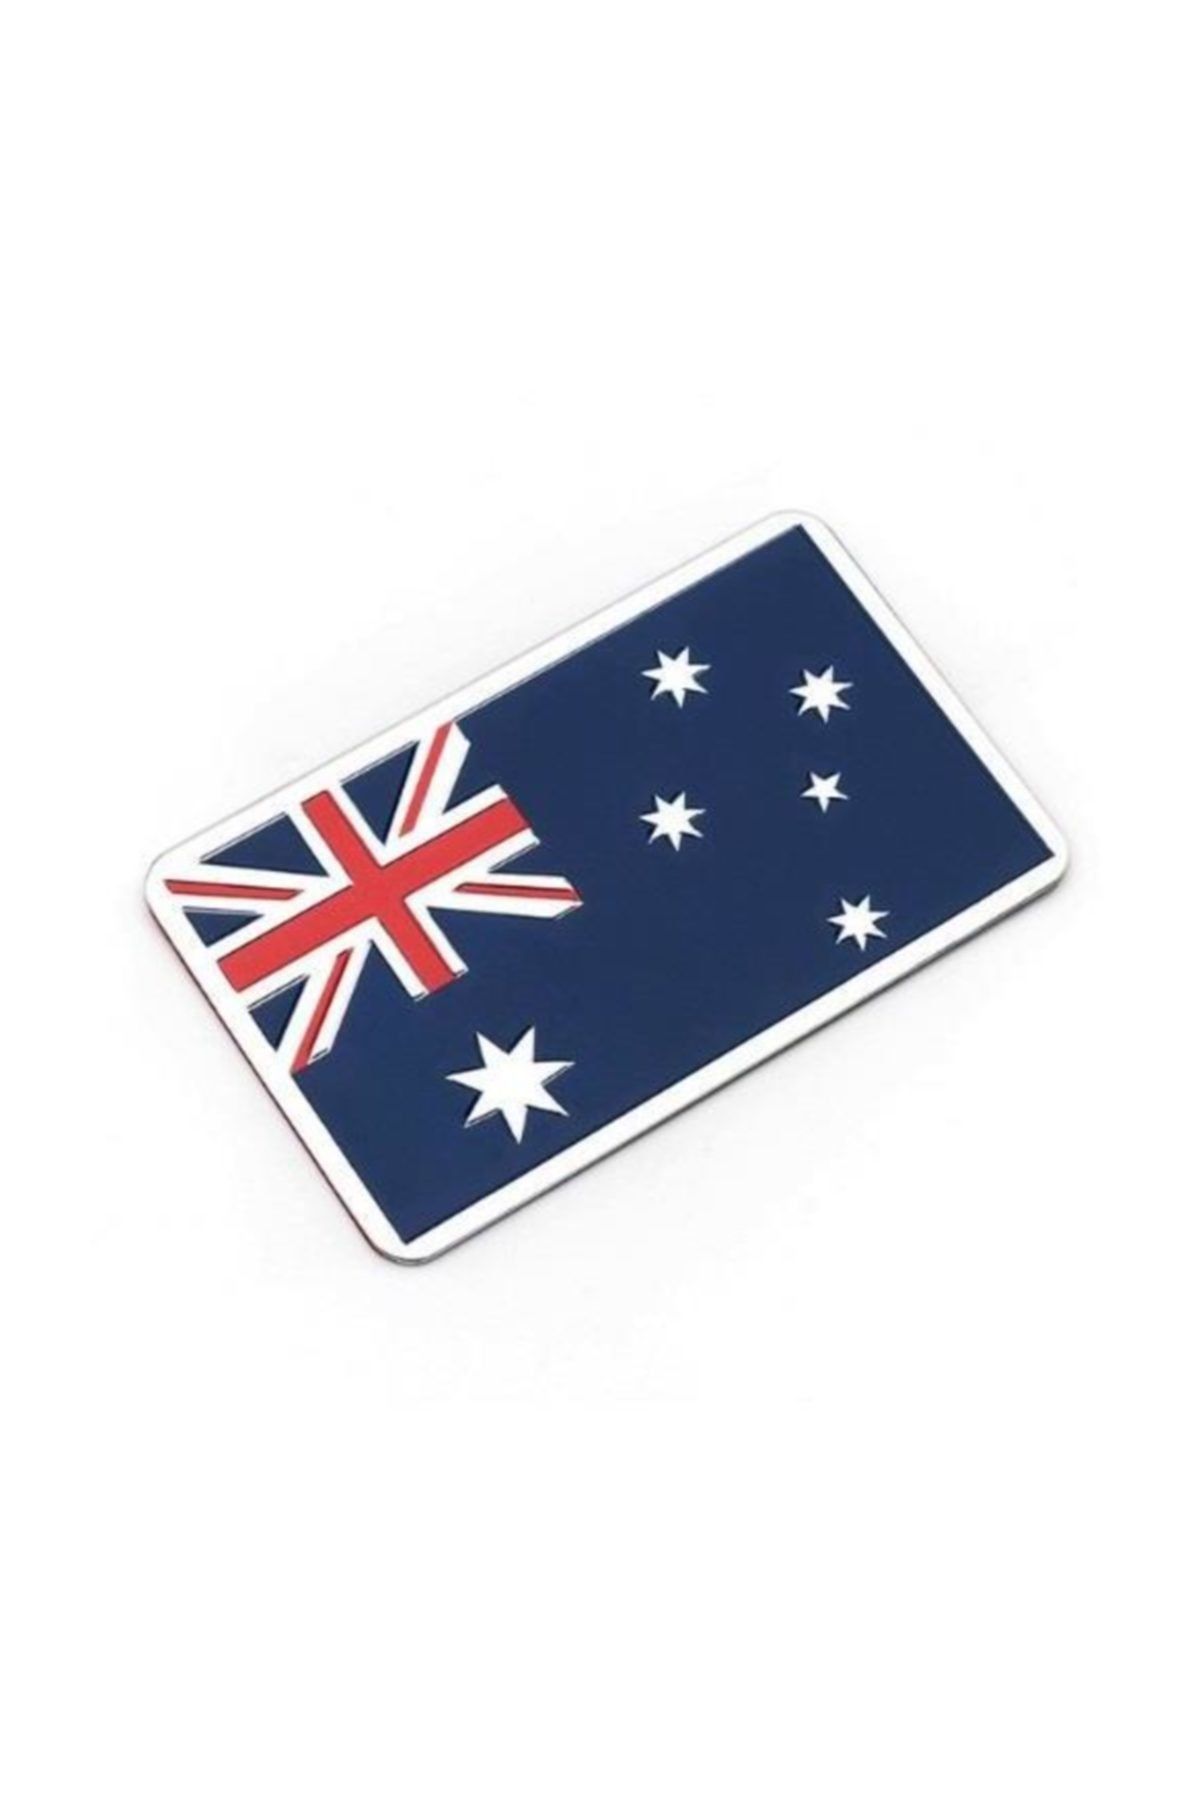 Knmaster Avustralya Bayrağı Tasarımlı Yazısız Alüminyum Sticker Etiket